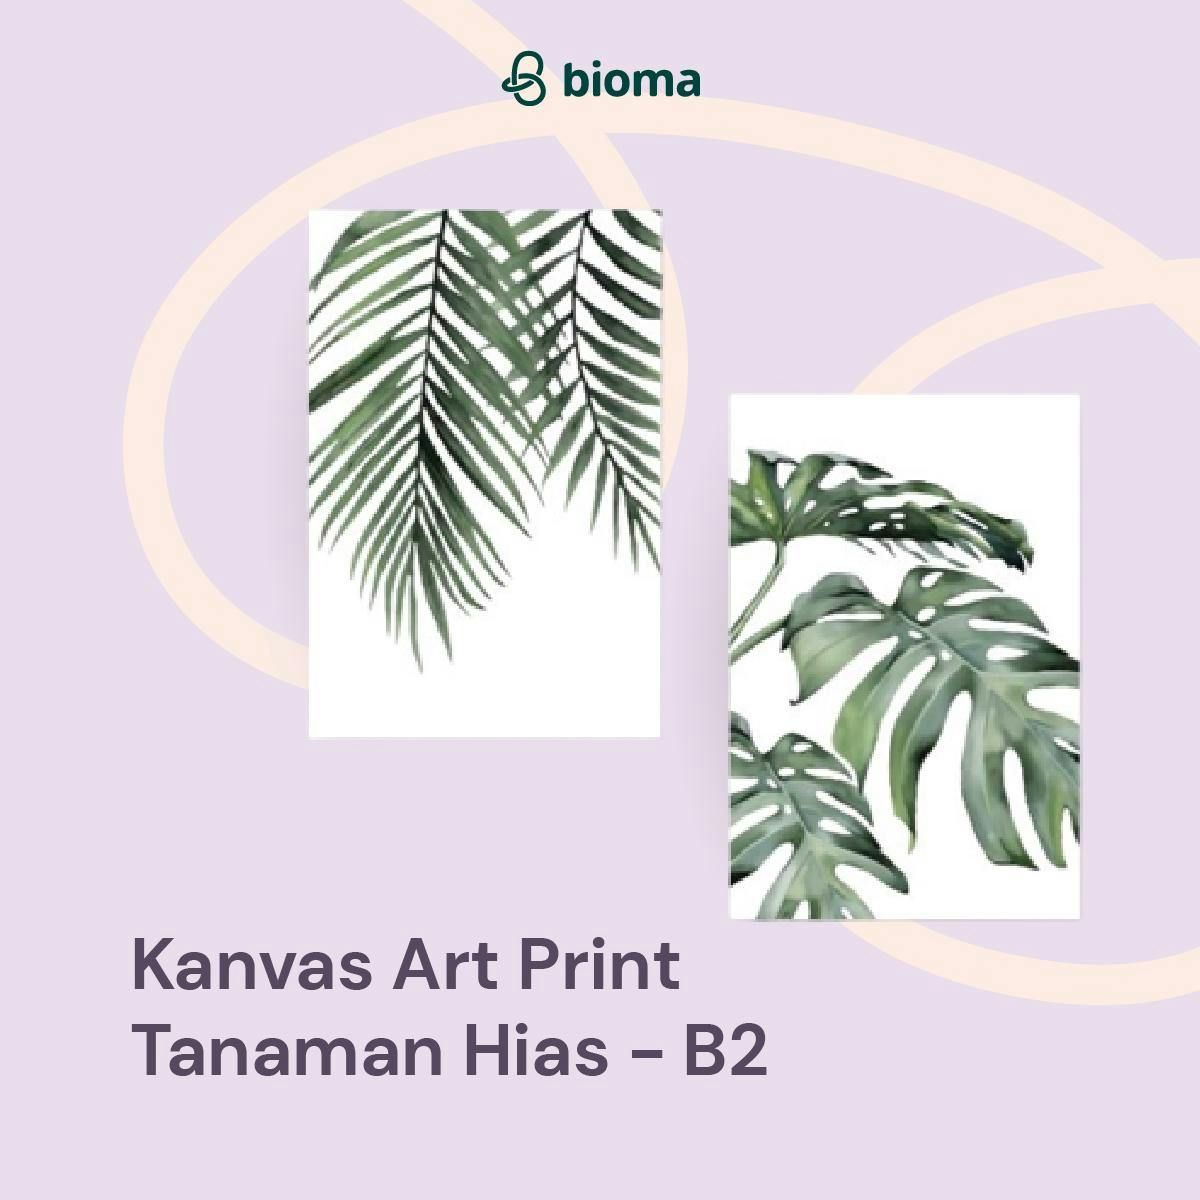 Kanvas Art Print Tanaman Hias - B2